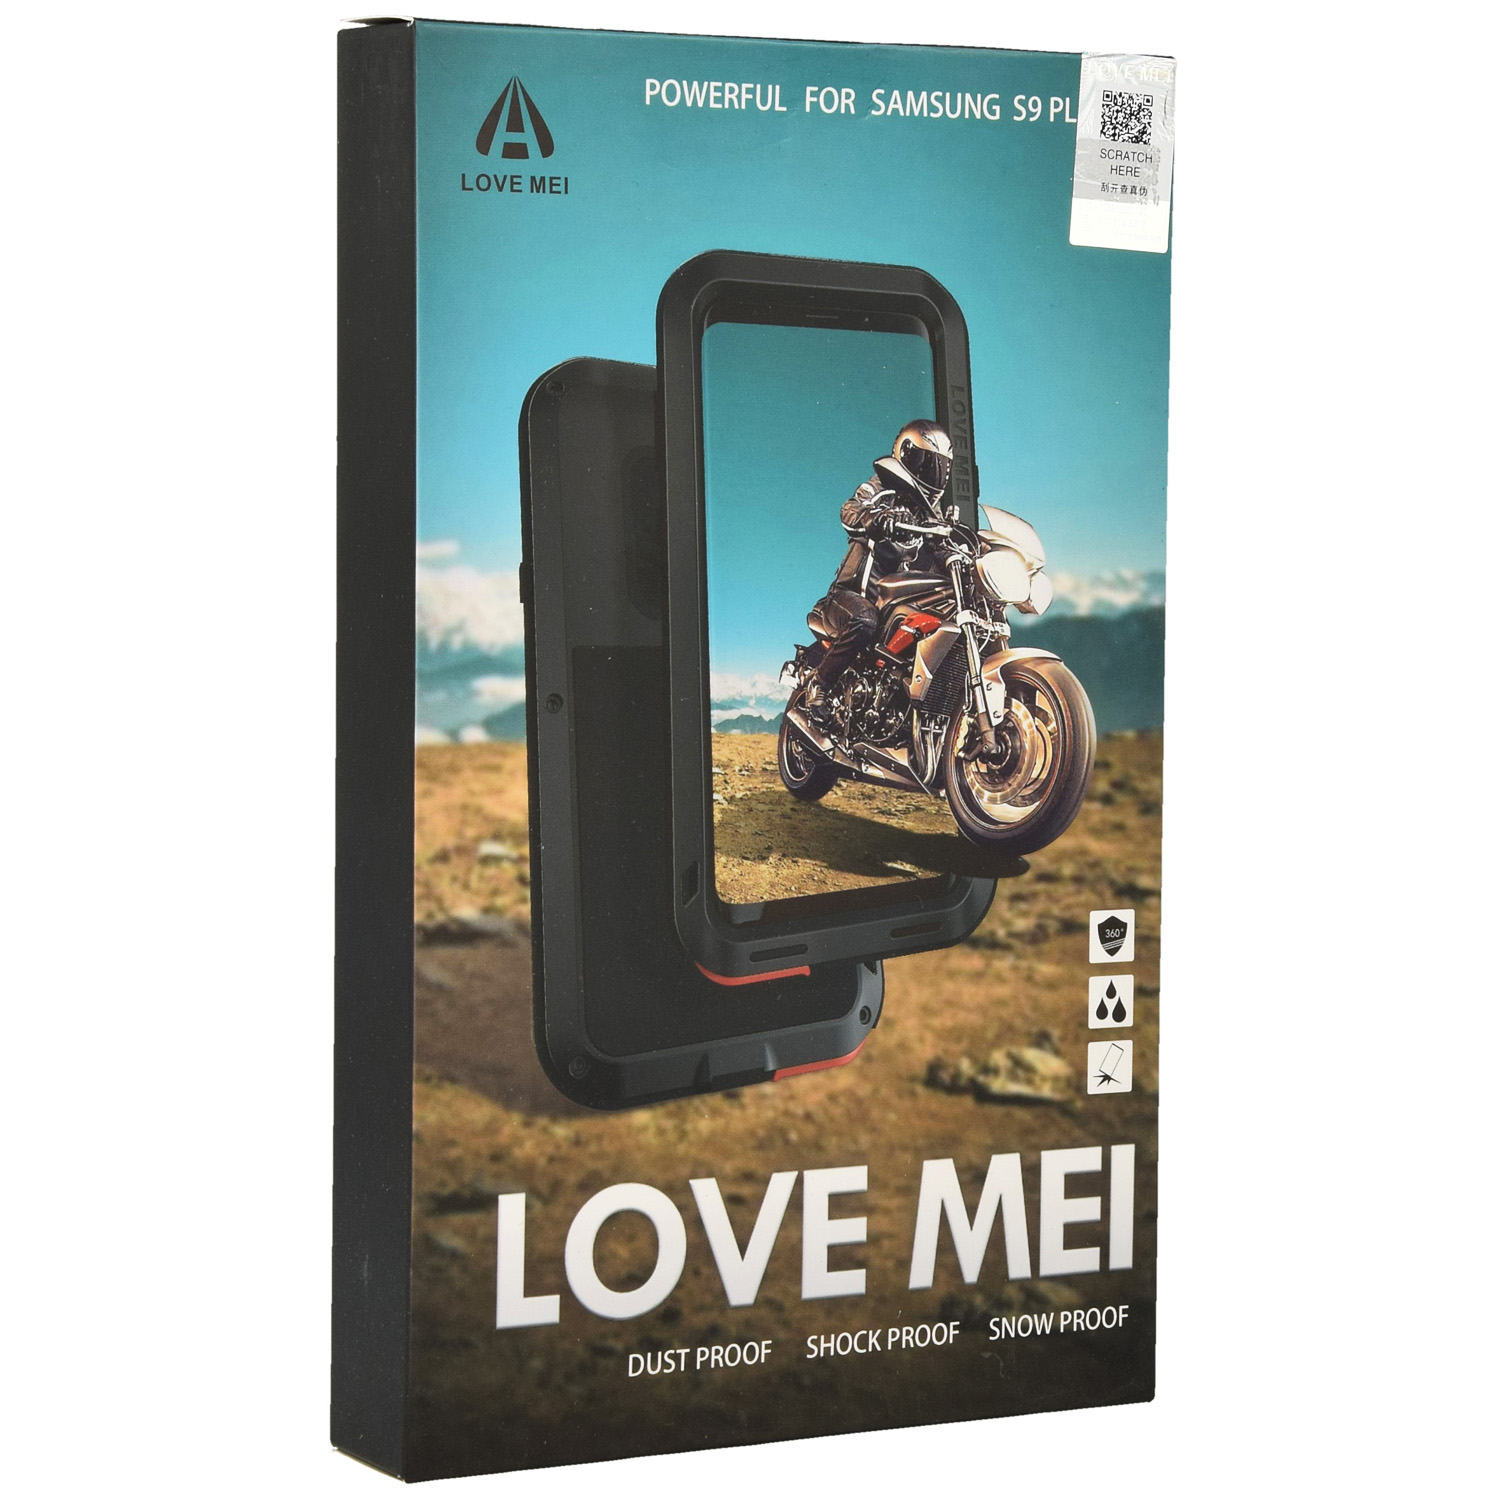 Oryginalne Pancerne Etui marki LOVE MEI z serii Powerful dla Galaxy S9 Plus